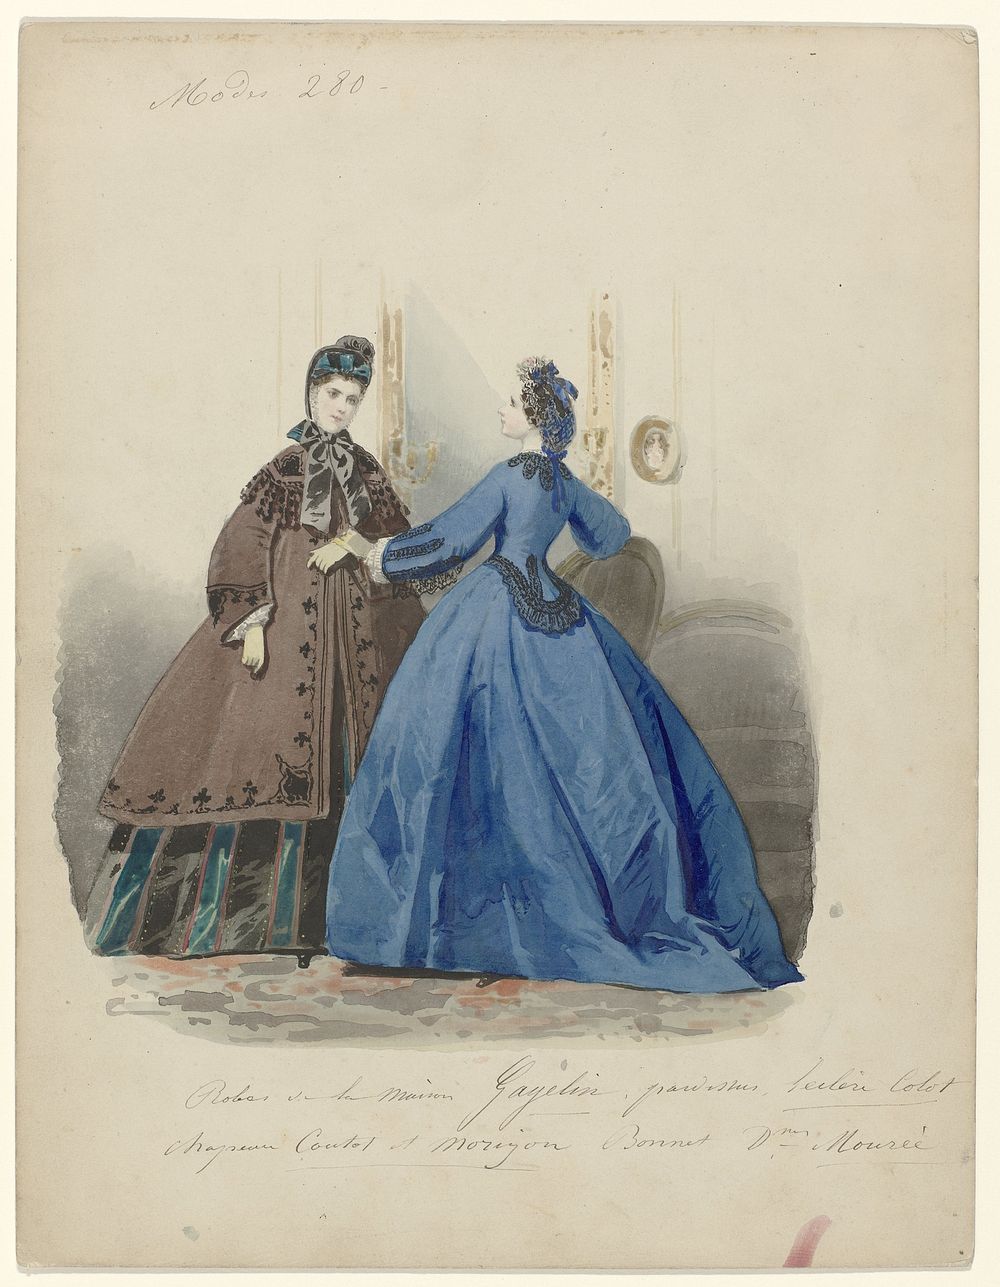 Modes 280 : Robes de la Maison Gagelin.... (c. 1860) by anonymous